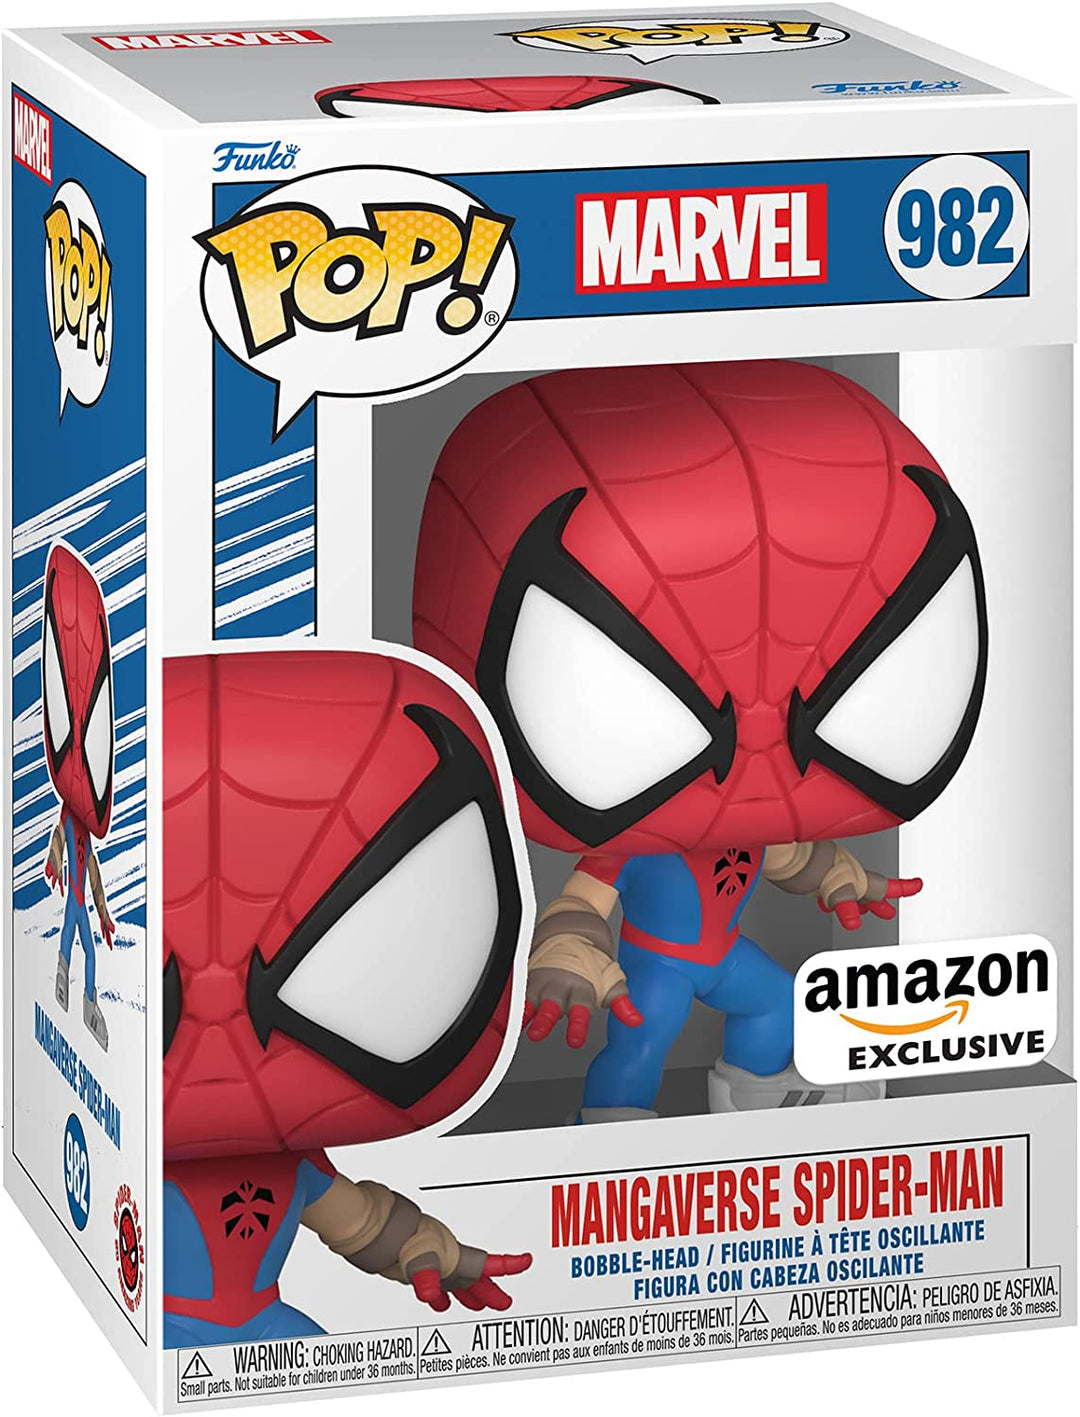 Marvel: Jahr der Spinne – Mangaverse Spider-Man Exclusive Funko